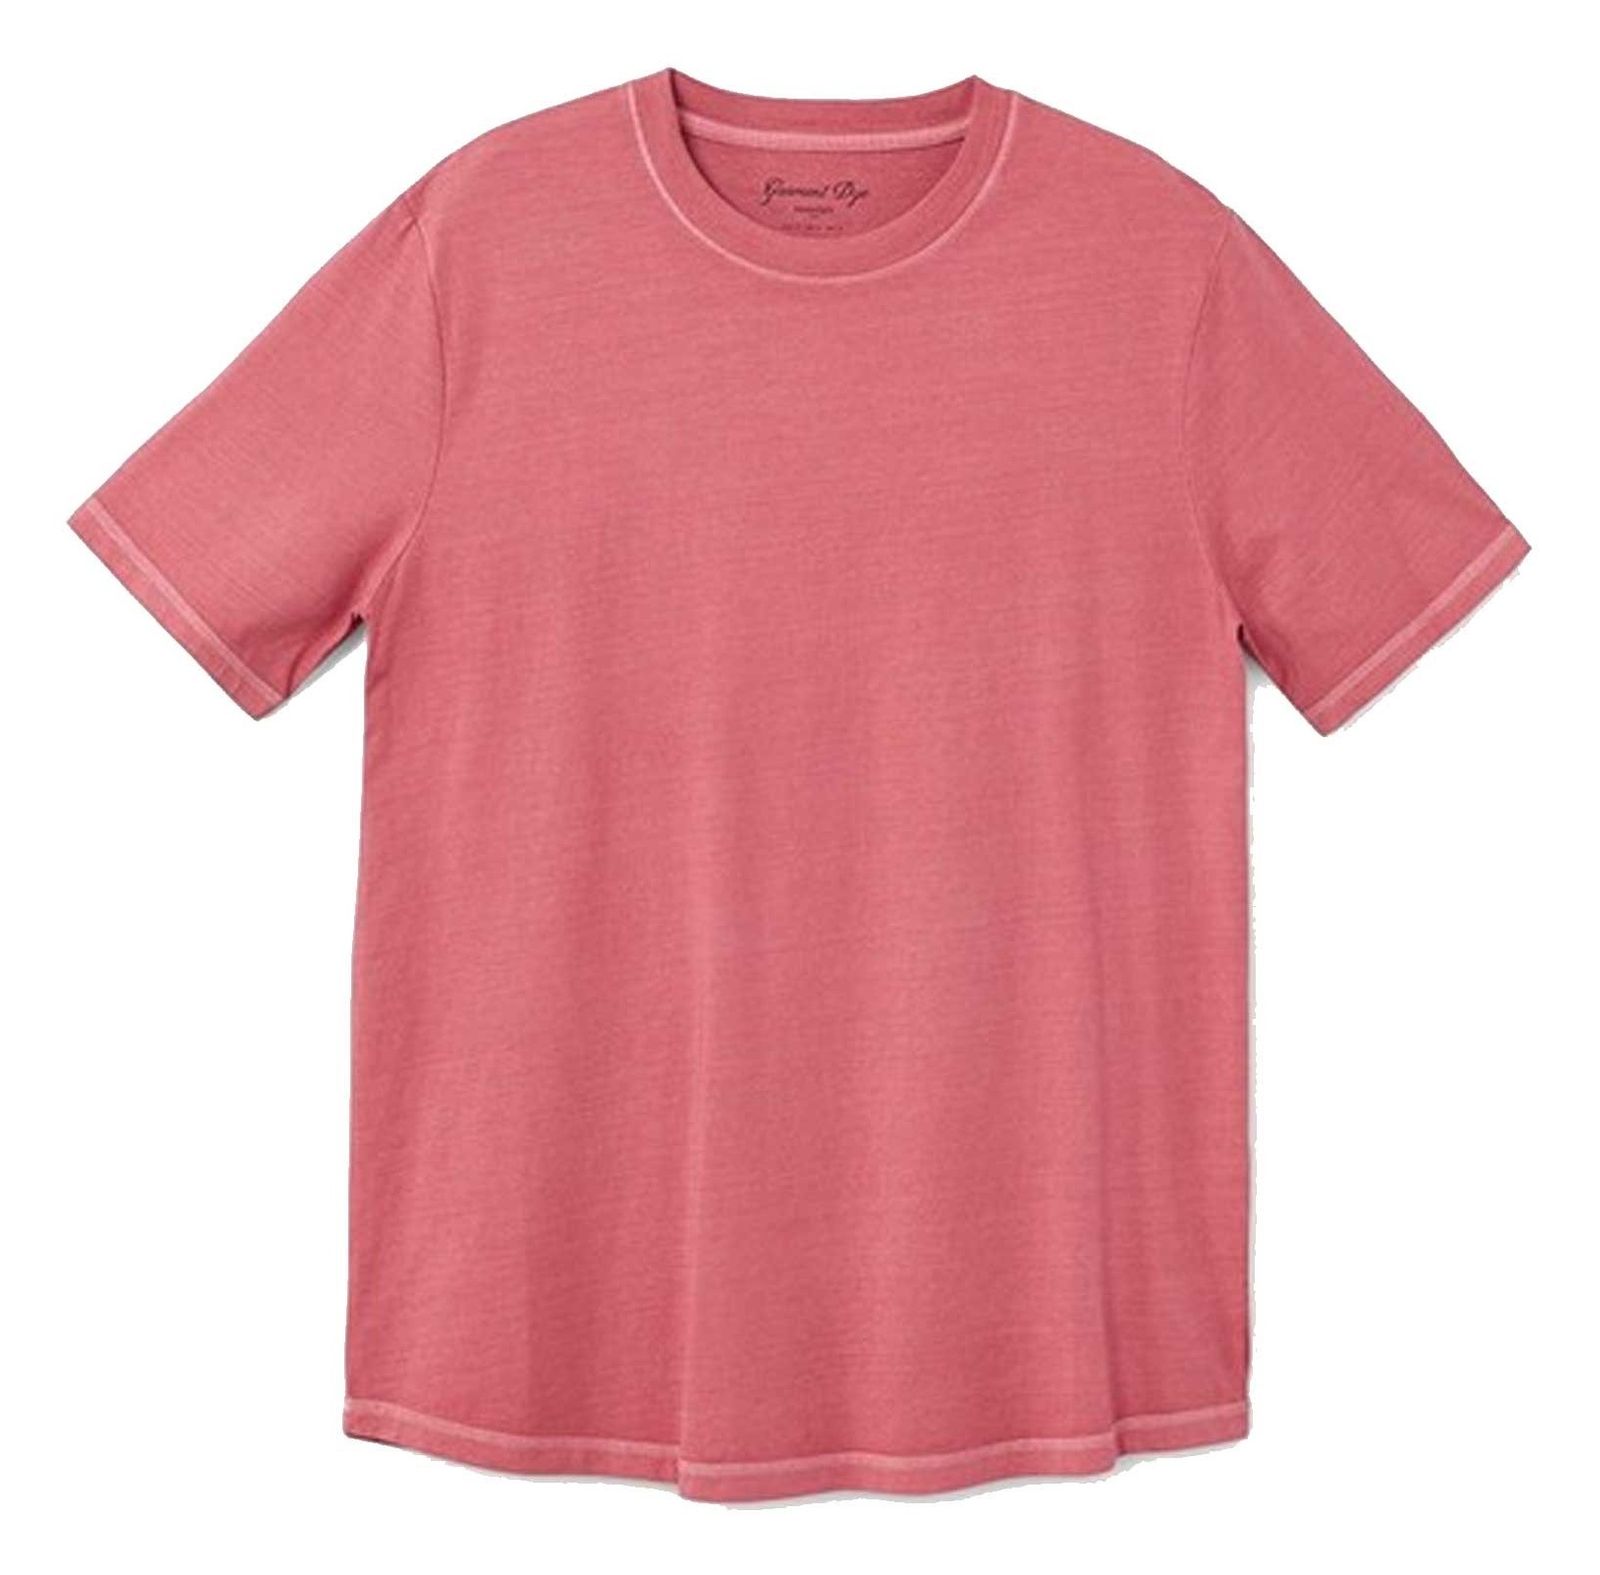 تی شرت نخی یقه گرد مردانه - مانگو - قرمز  - 1